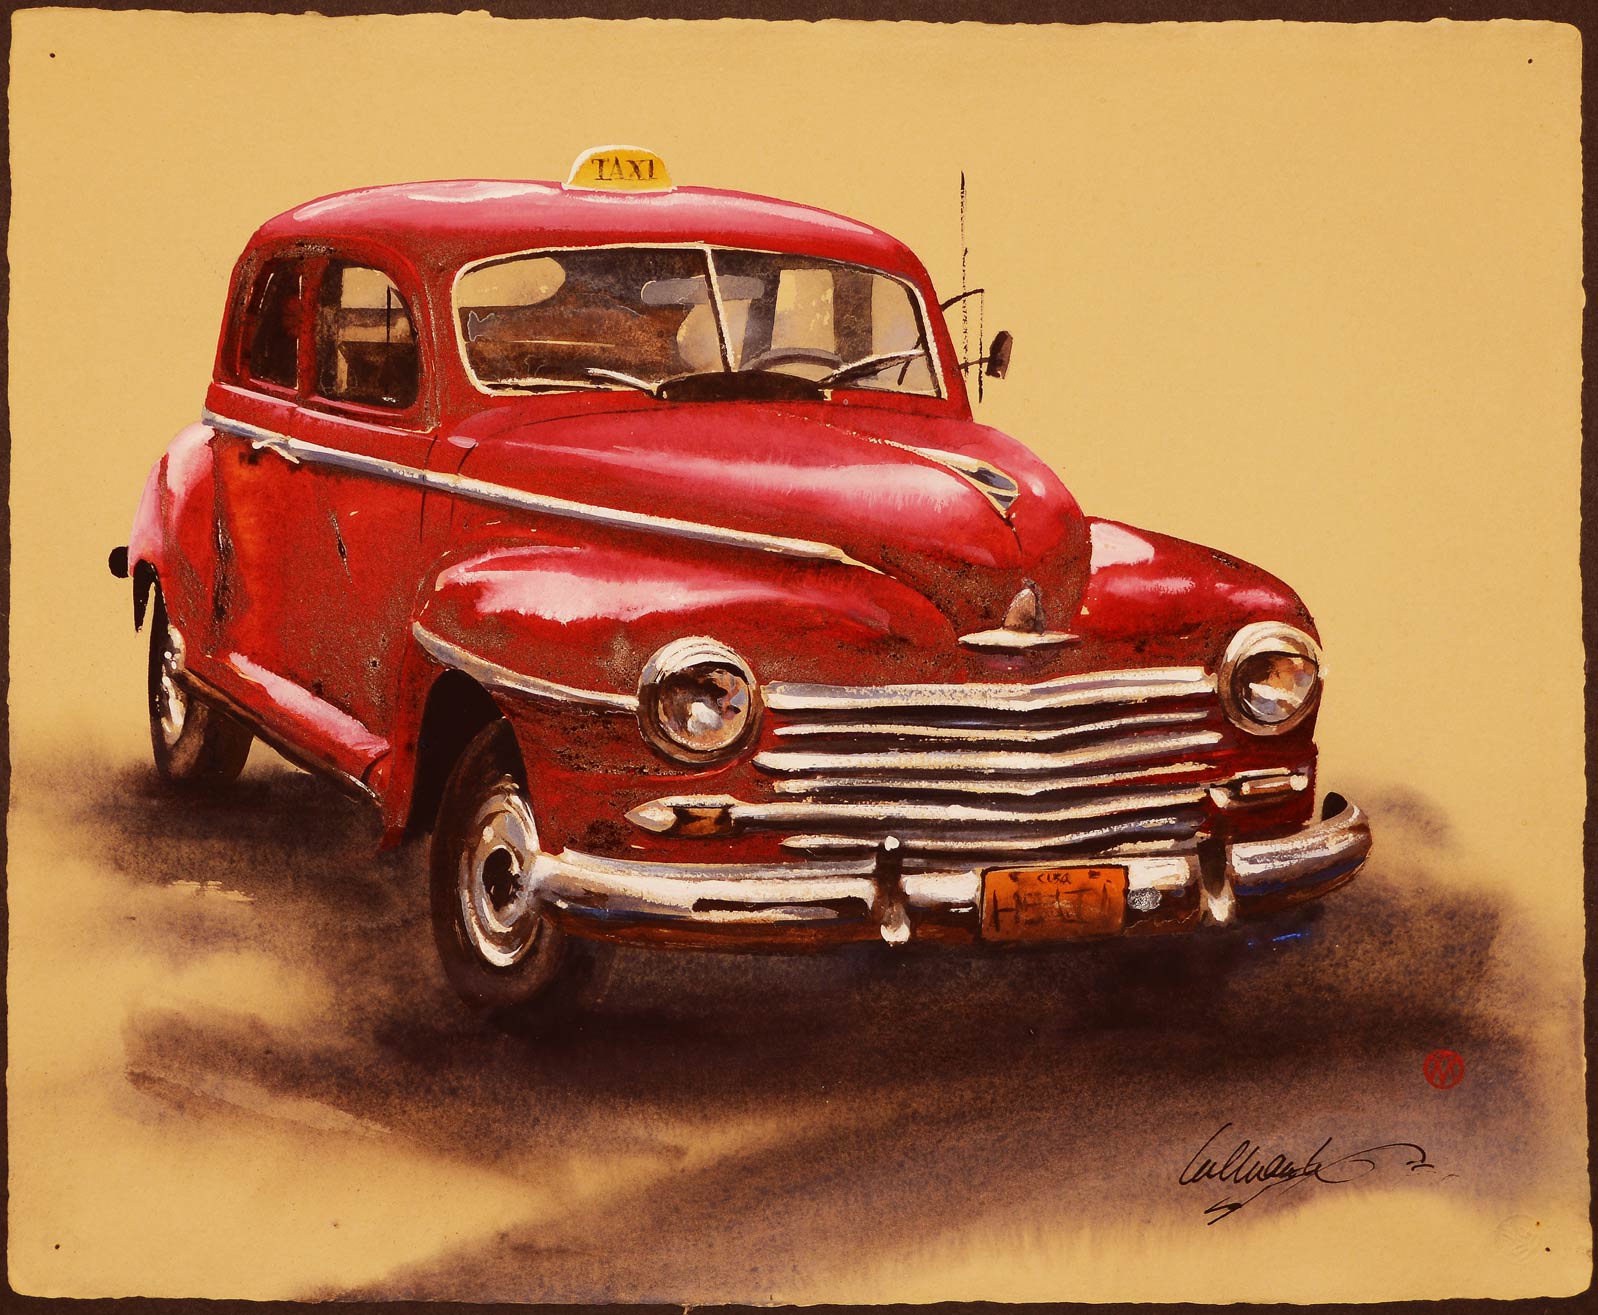 Matthews_Big-Red-Taxi-(Cuba)_Watercolor_16-x-20